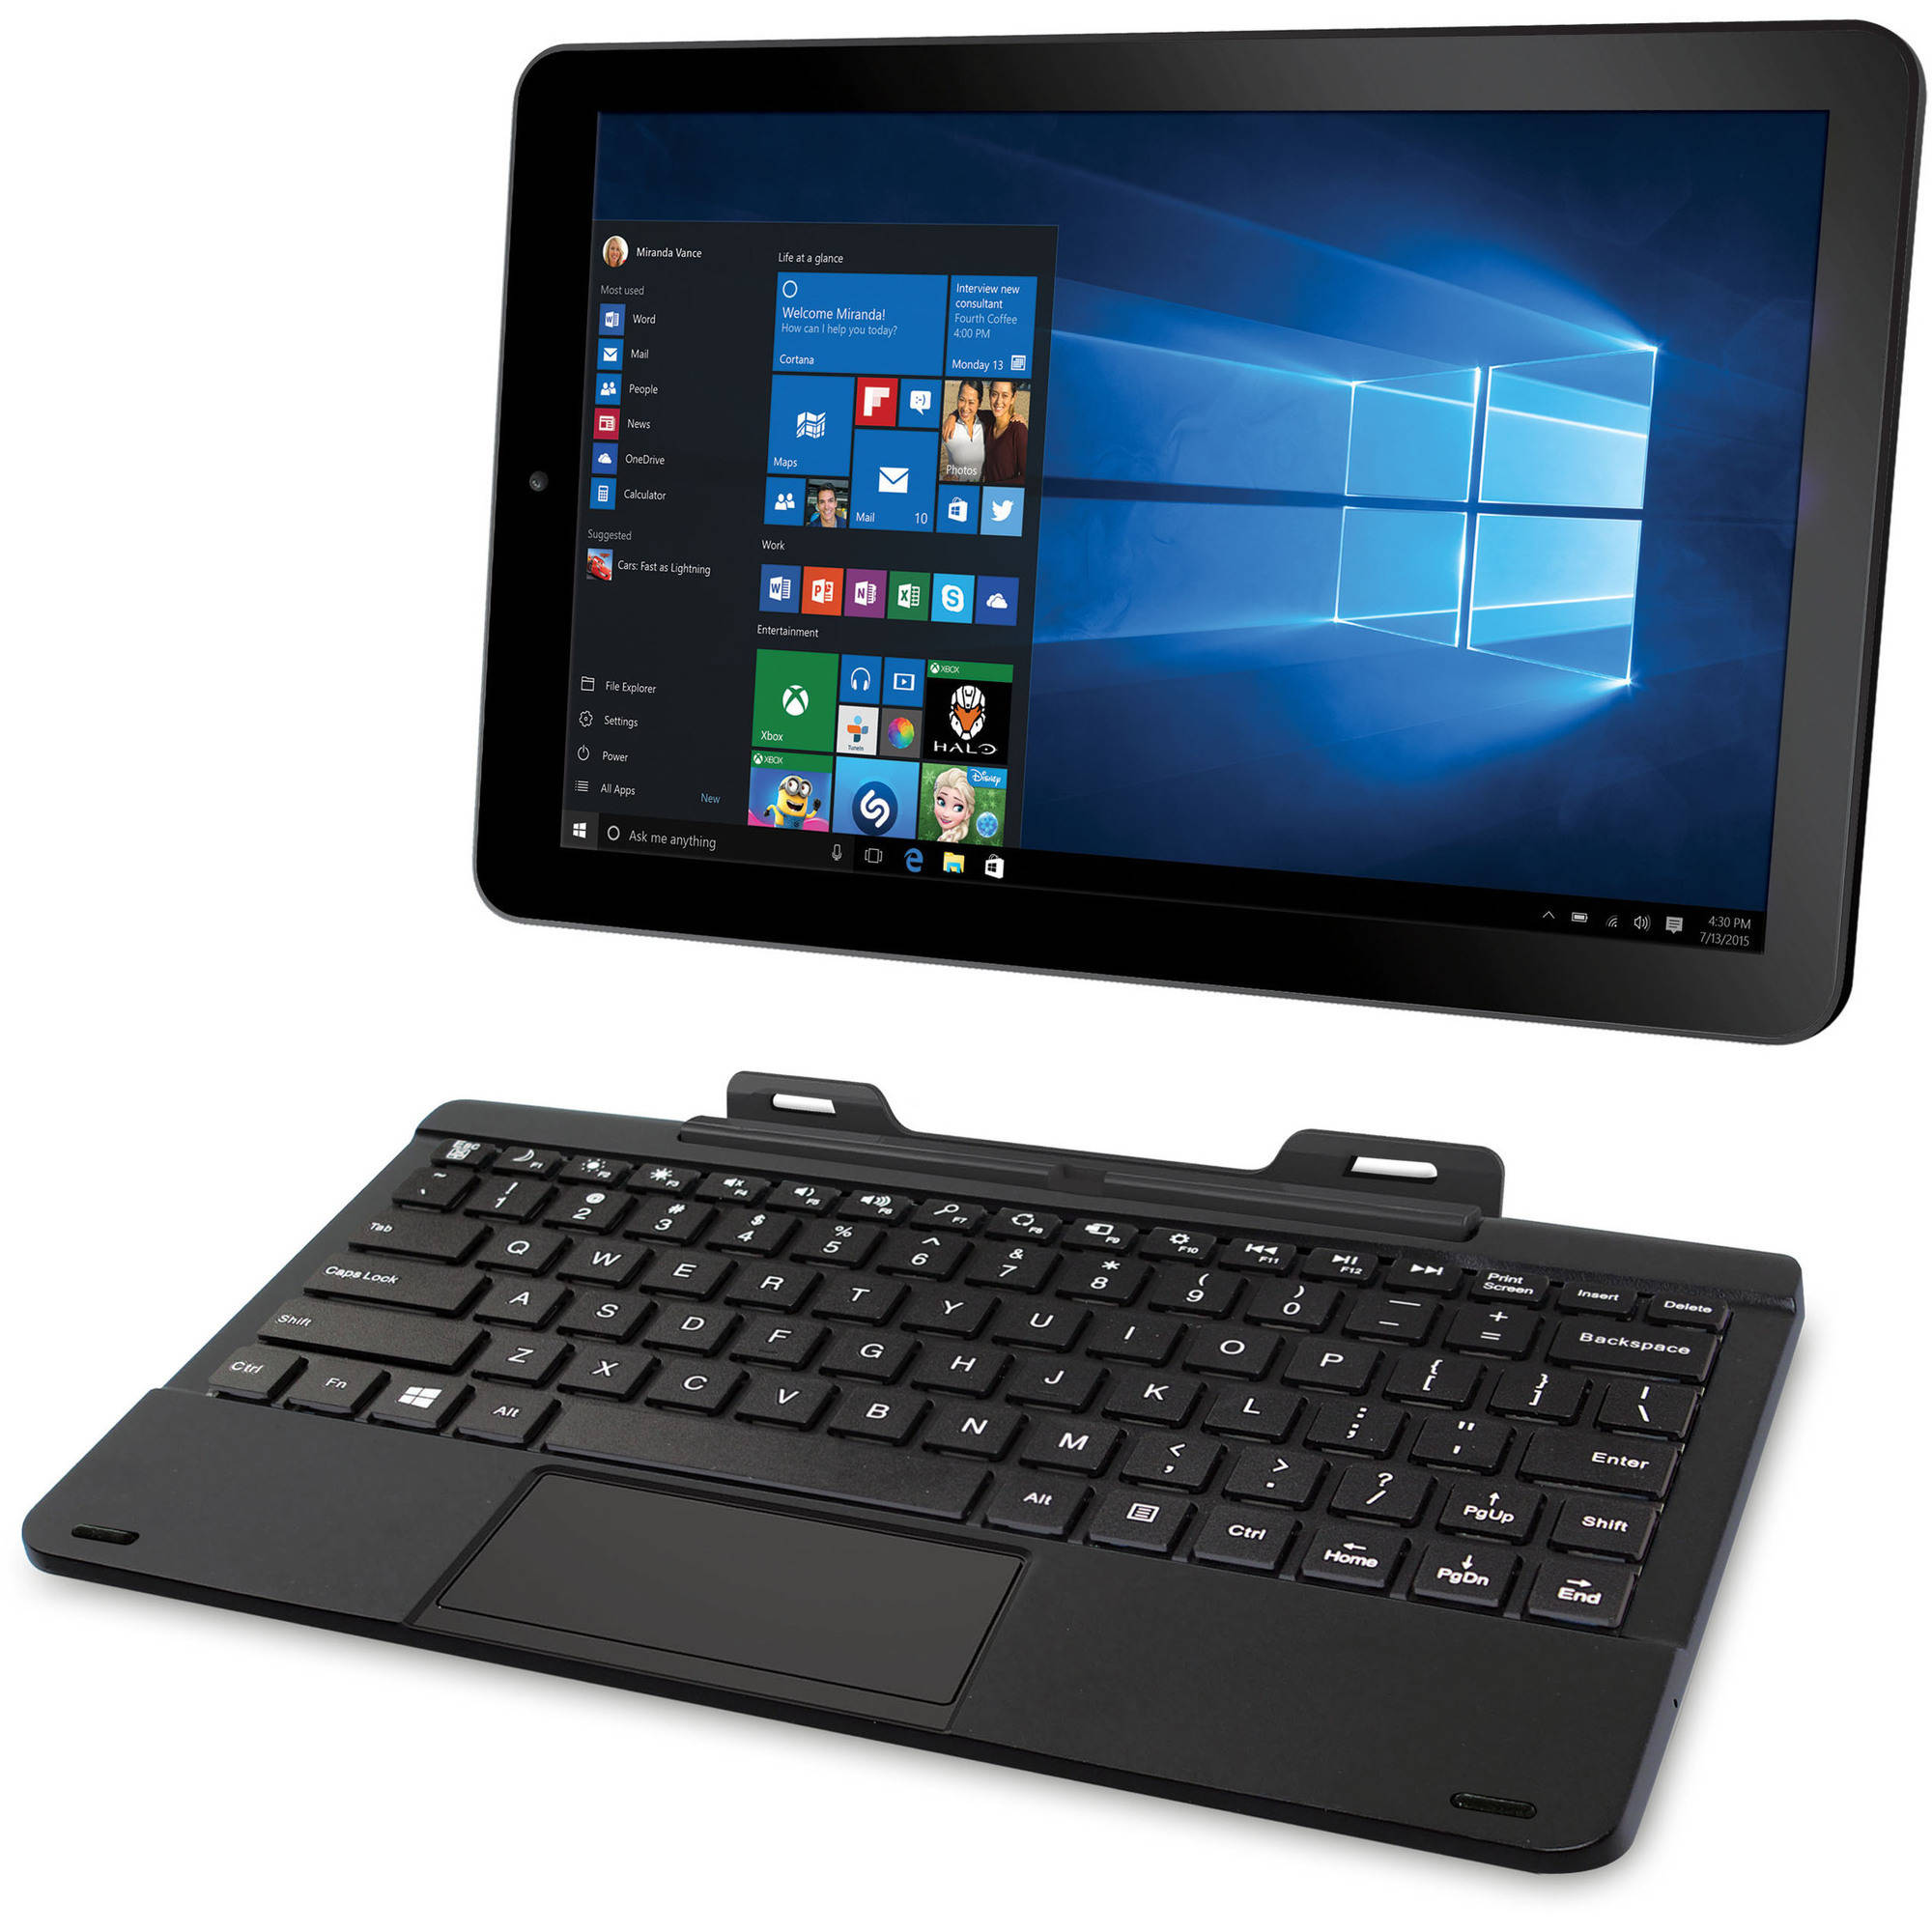 RCA Cambio 10.1" 2-in-1 Tablet 32GB Intel Atom Z3735F Quad-Core Processor Windows 10 - image 1 of 4